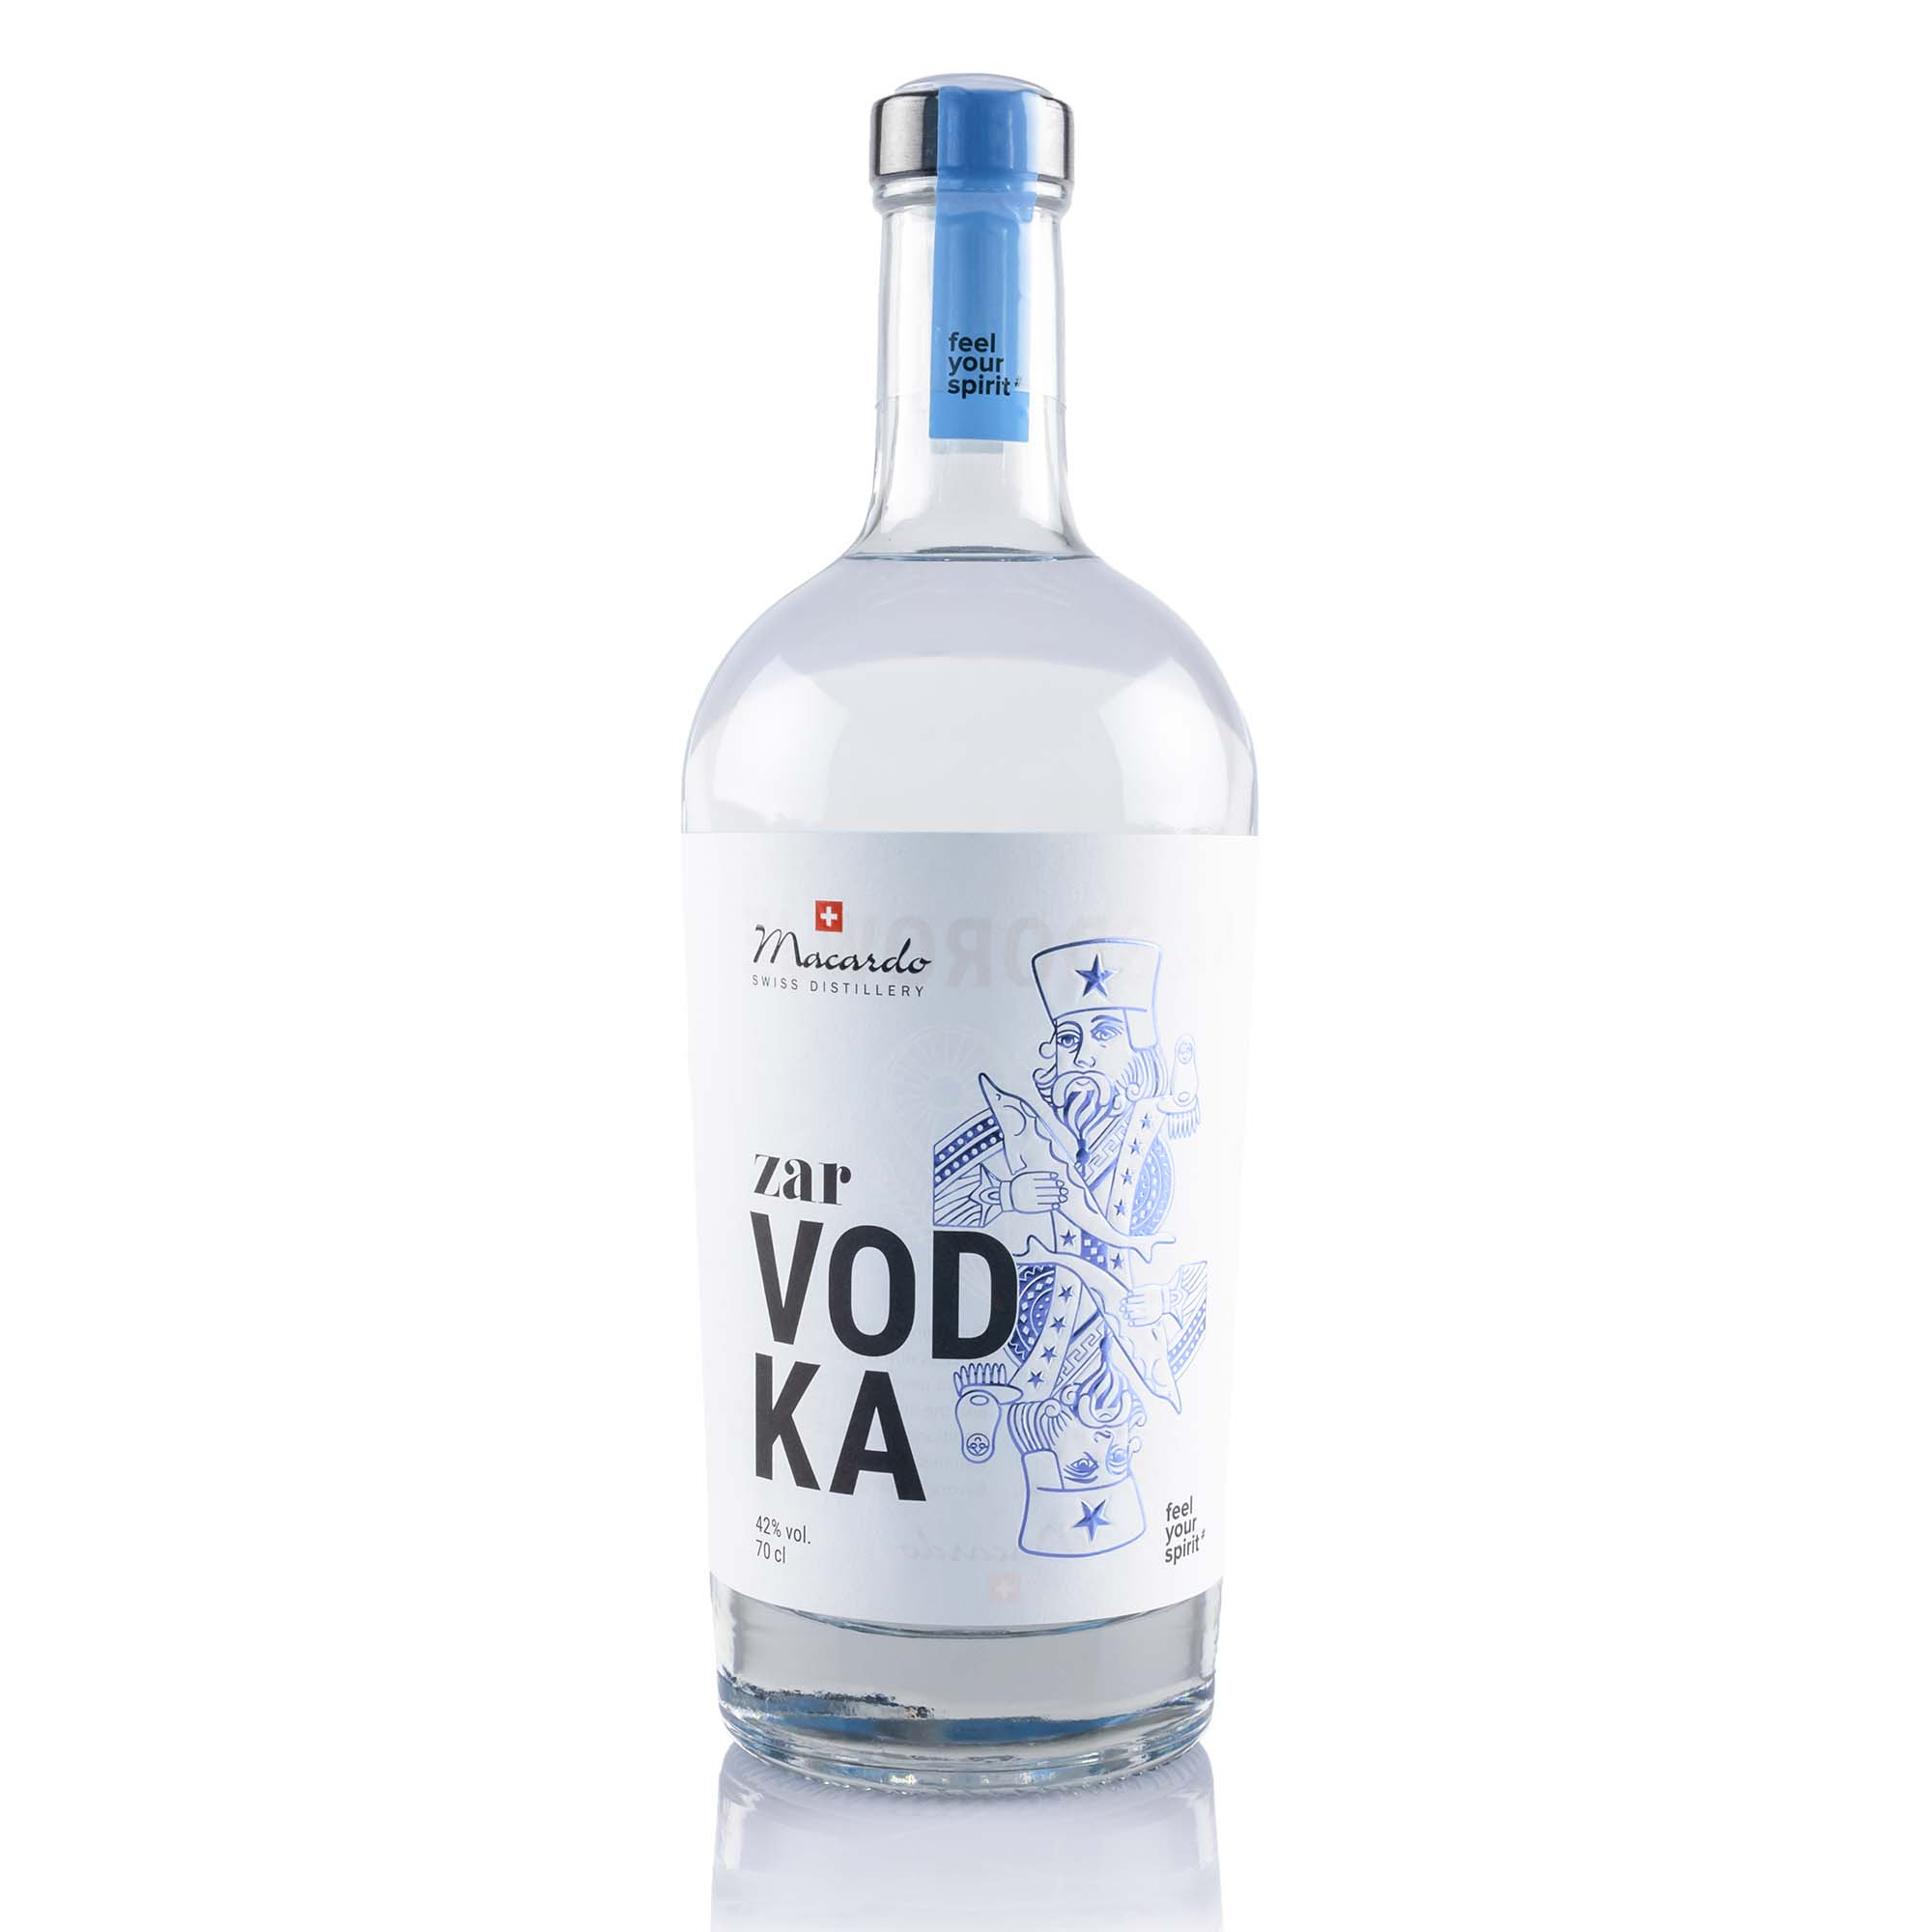 Zar Vodka von Macardo, 70cl, 42% Vol.